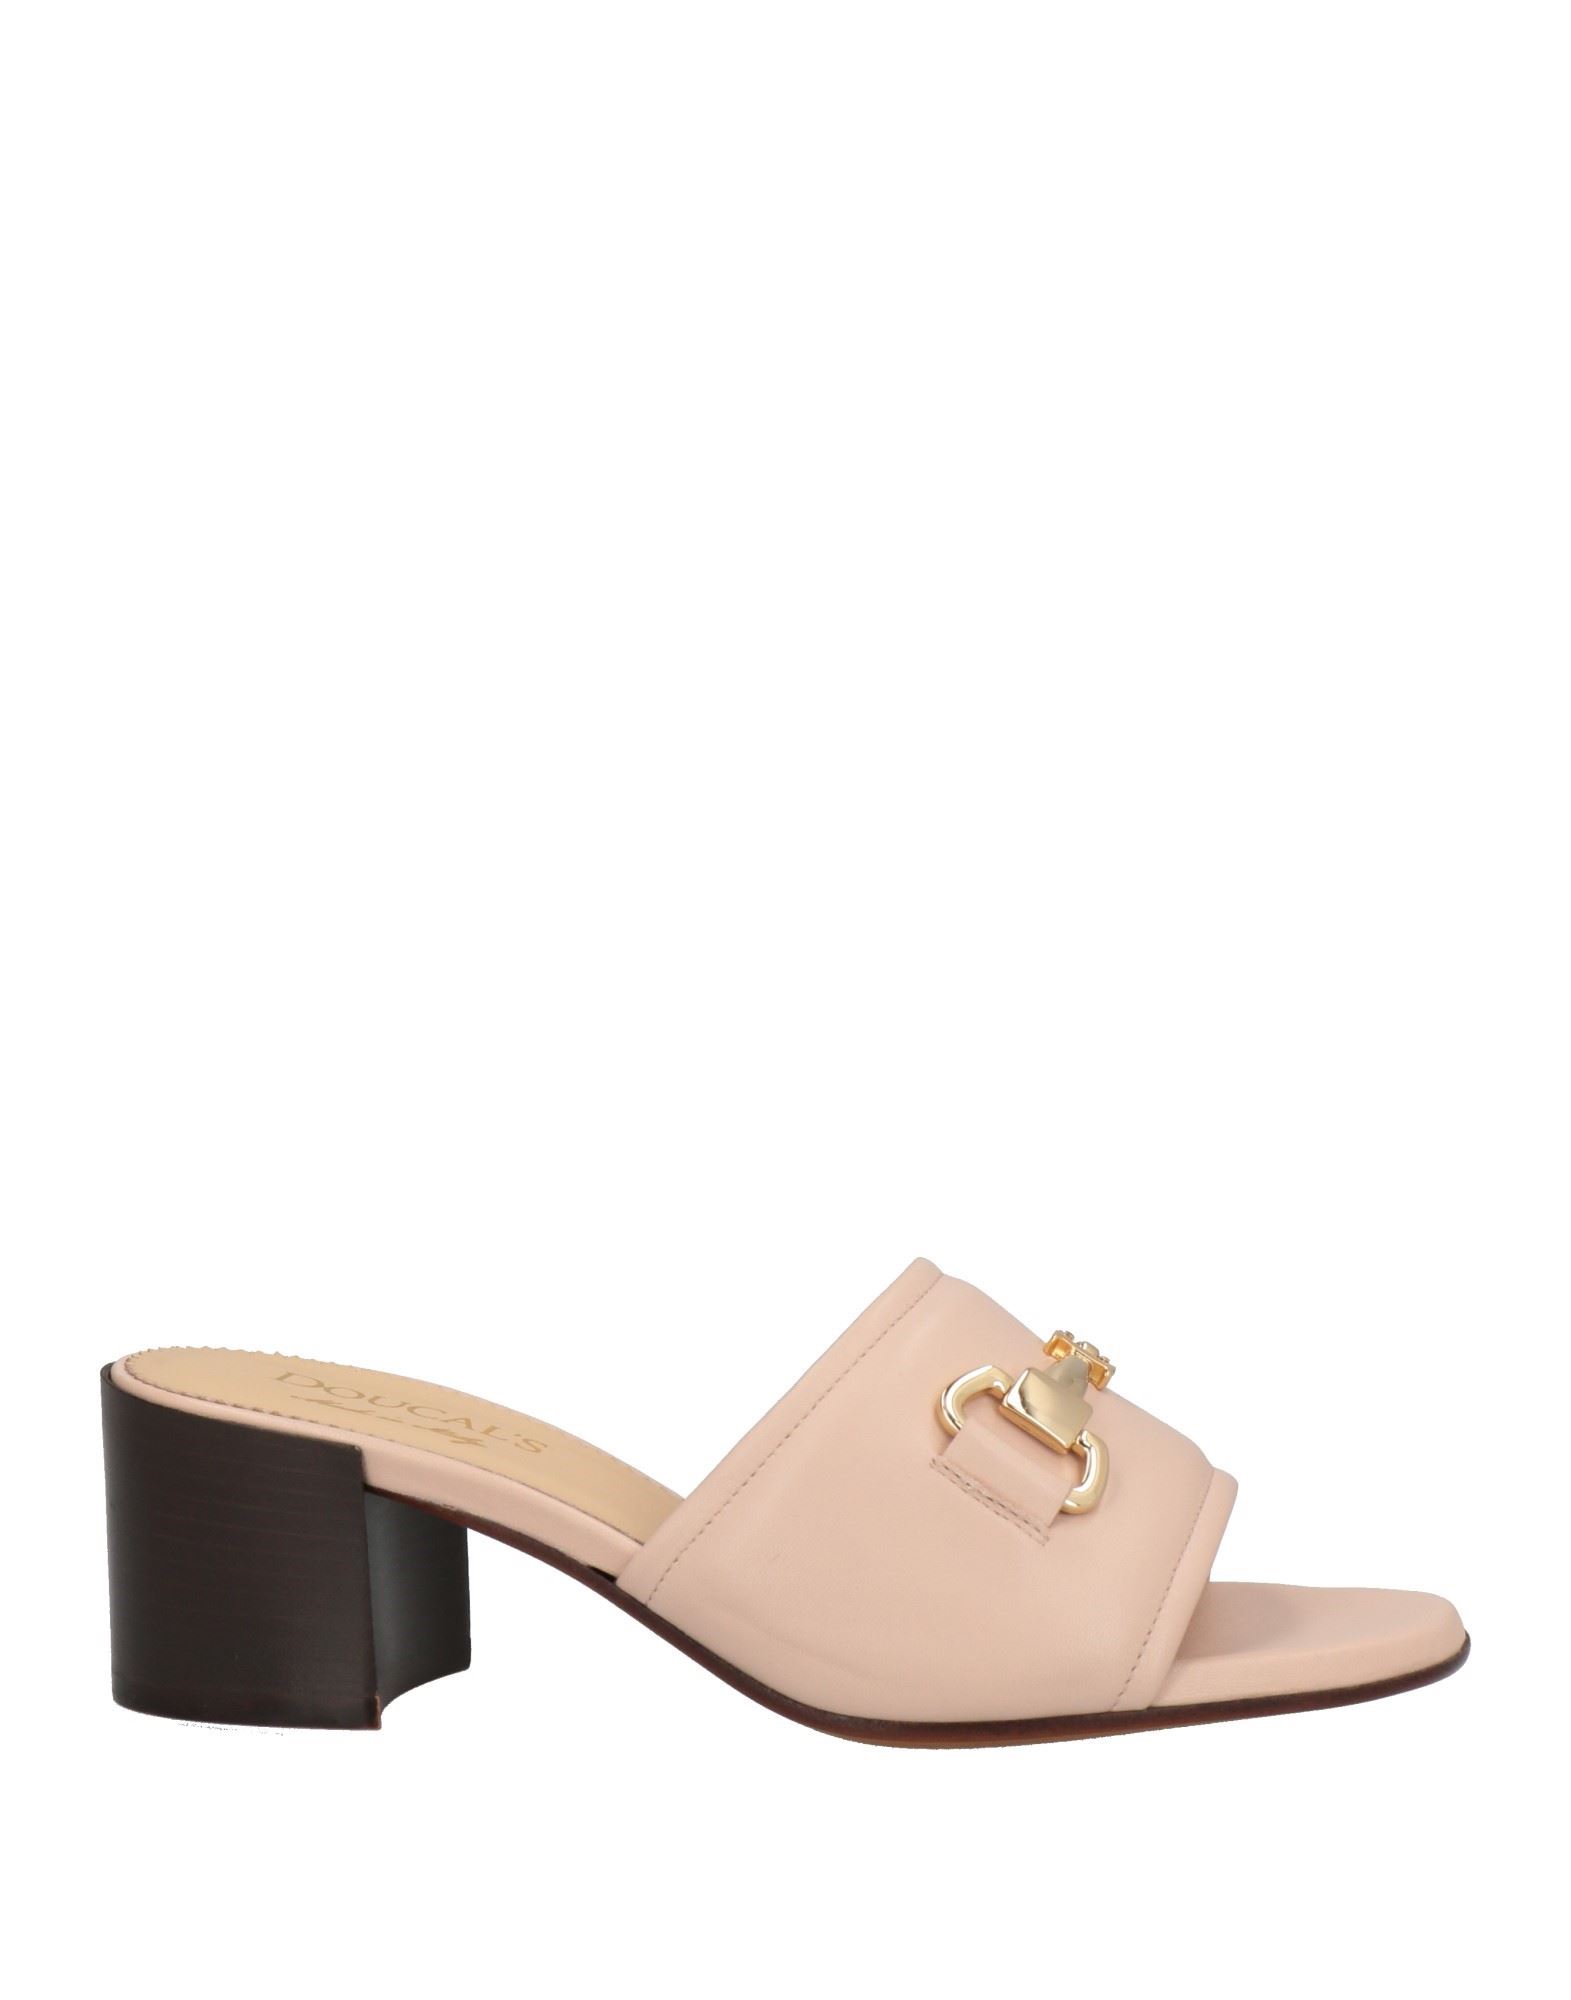 Doucal's Woman Sandals Light Pink Size 6.5 Calfskin